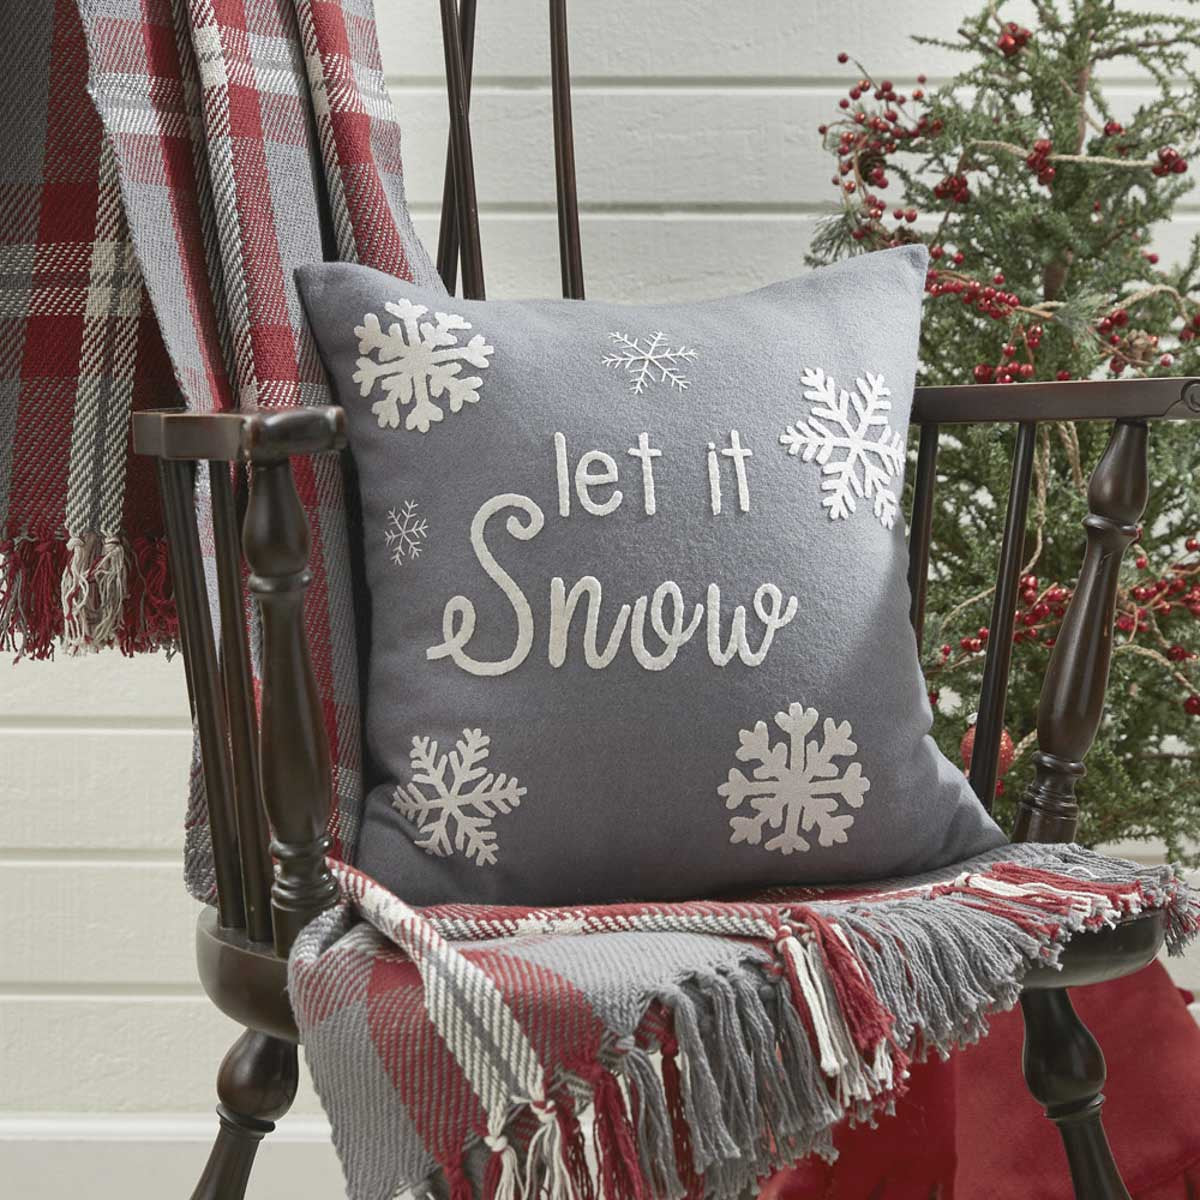 Let It Snow Felt 16" Pillow Set - Down Feather Fill Set of 2 Park Designs